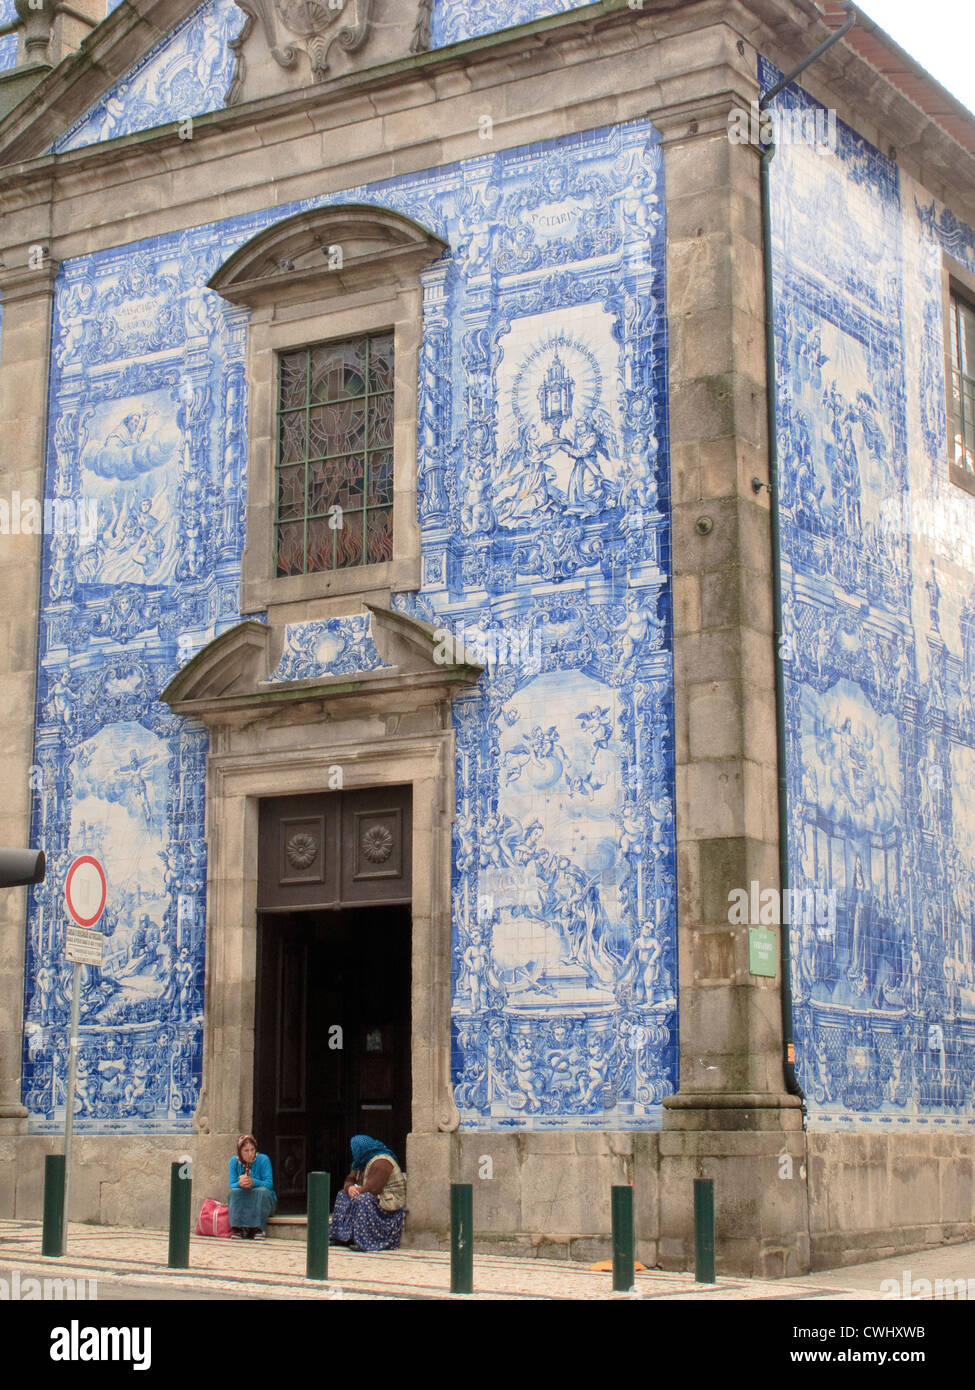 Capela das Almas de Santa Catarina Rua de Santa Catarina Porto Portugal Stock Photo